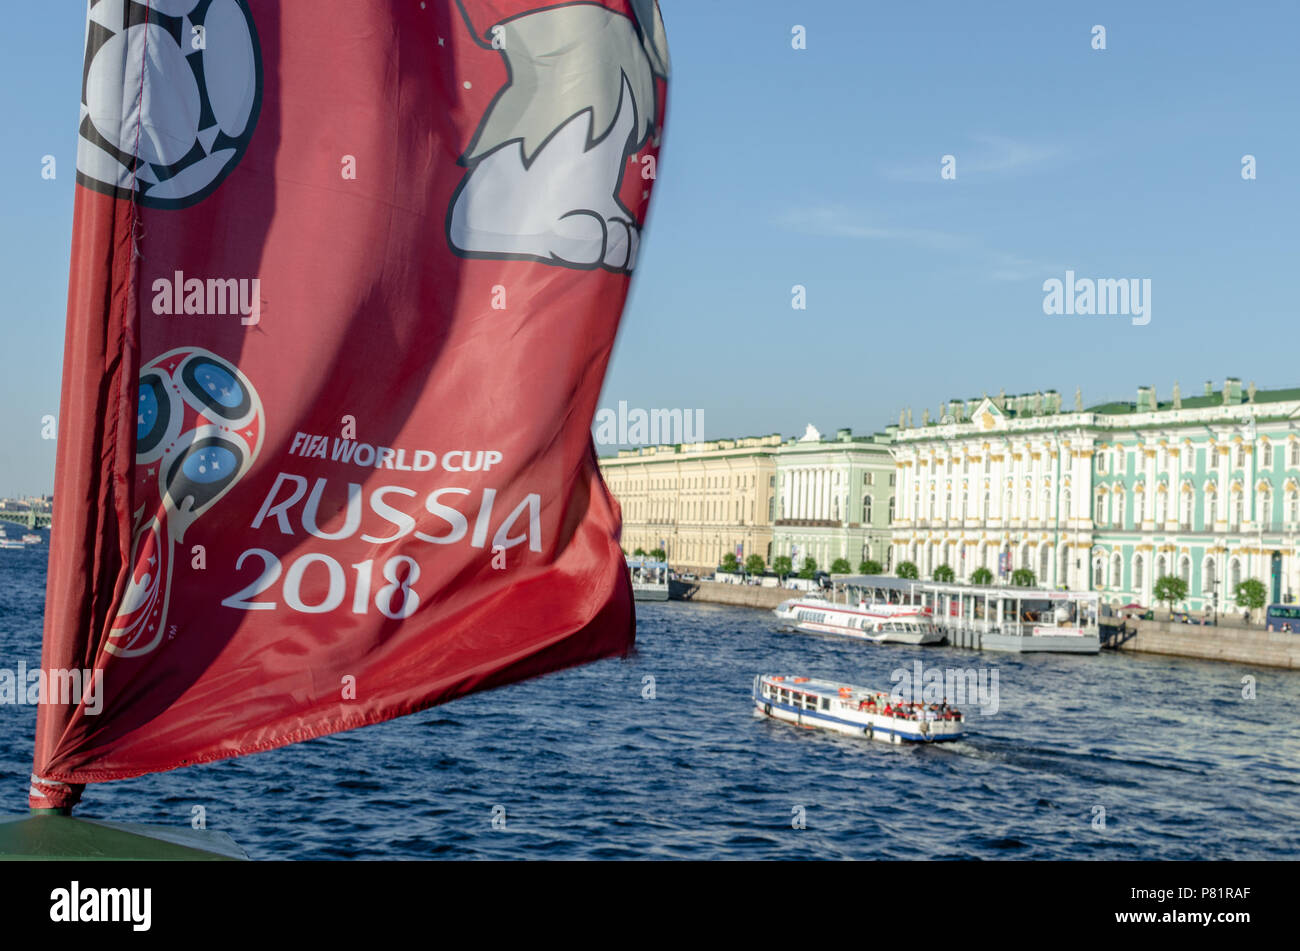 Indicatore con la Russia ufficiale 2018 world cup mascotte e logo sul fiume Neva si affaccia il Palazzo d'inverno a San Pietroburgo. Foto Stock